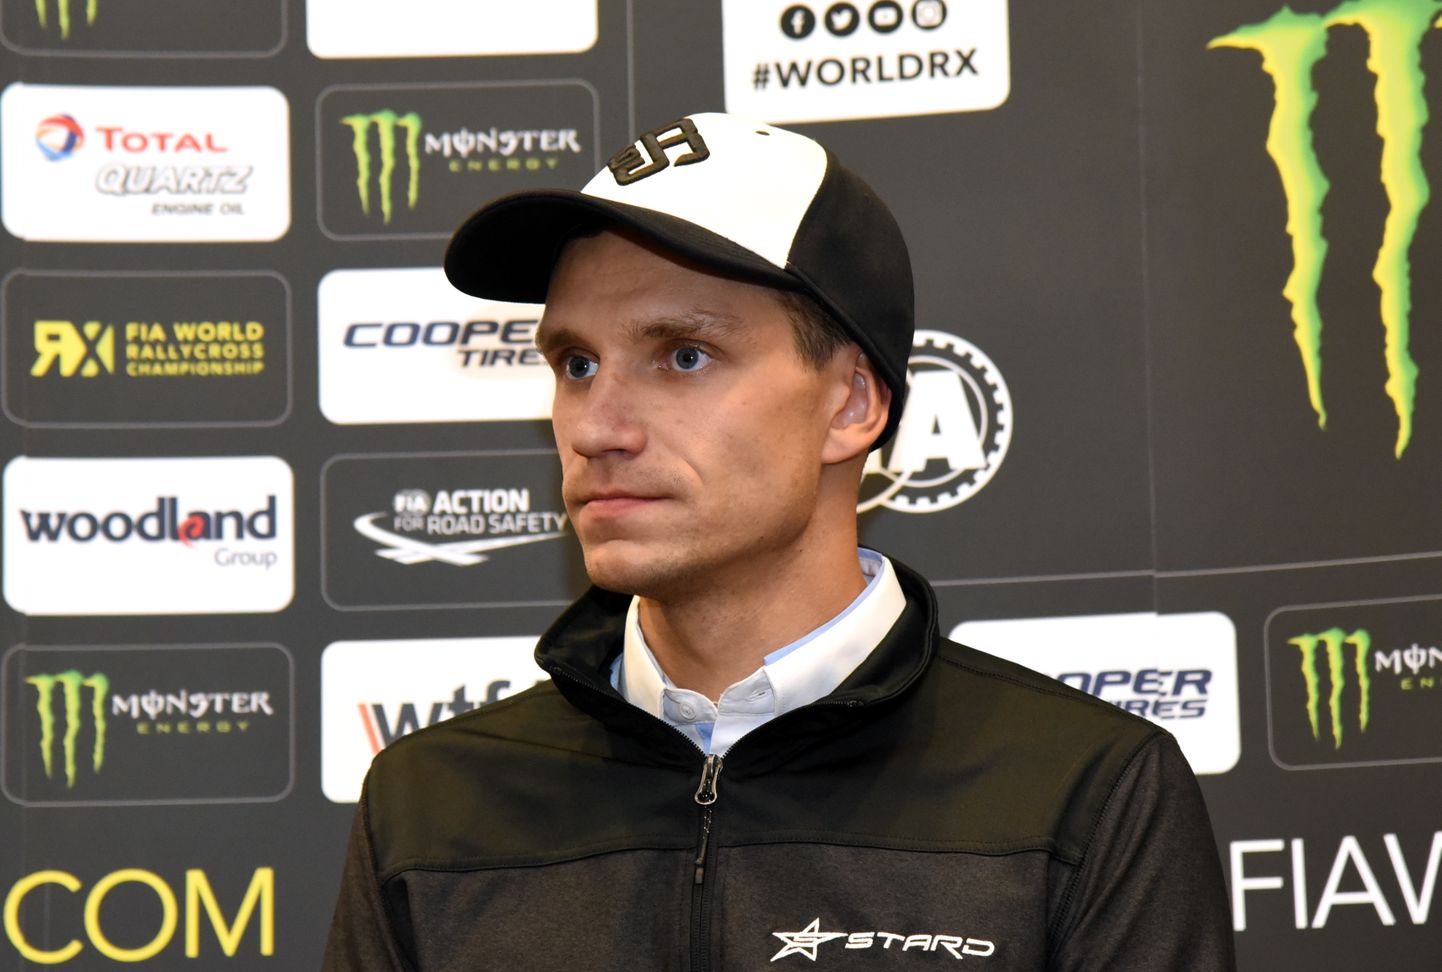 Autobraucējs Jānis Baumanis piedalās preses konferencē, kurā informē par pasaules rallijkrosa čempionāta Latvijas posmu